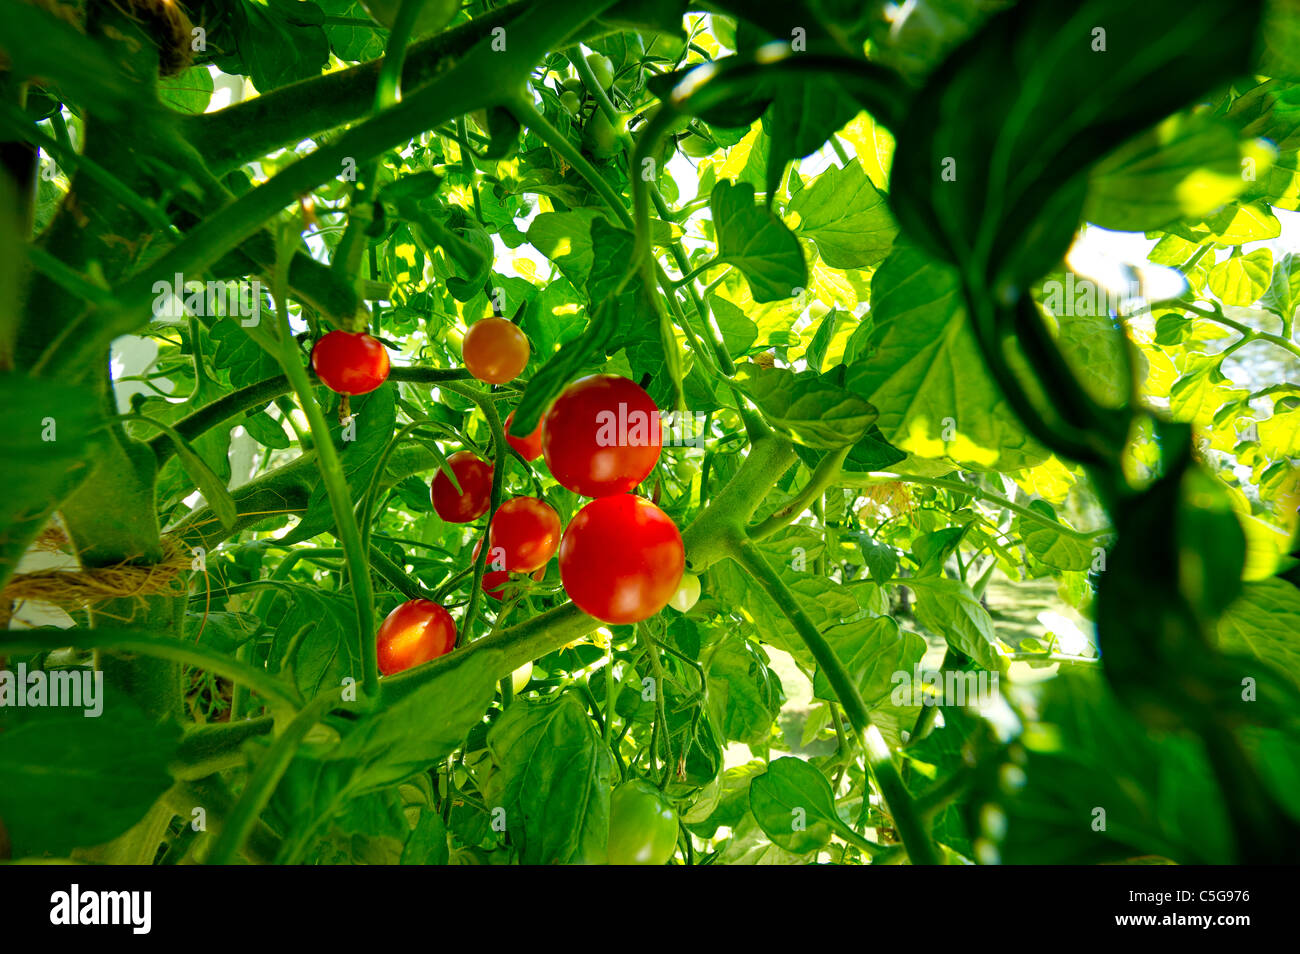 Tomaten auf Busch Strauch Greenfood Bio biologische Pflanzenzüchtung Garten Gartenarbeit oberen schöne Abdeckung grün Essen Frucht rot frisch neu Stockfoto